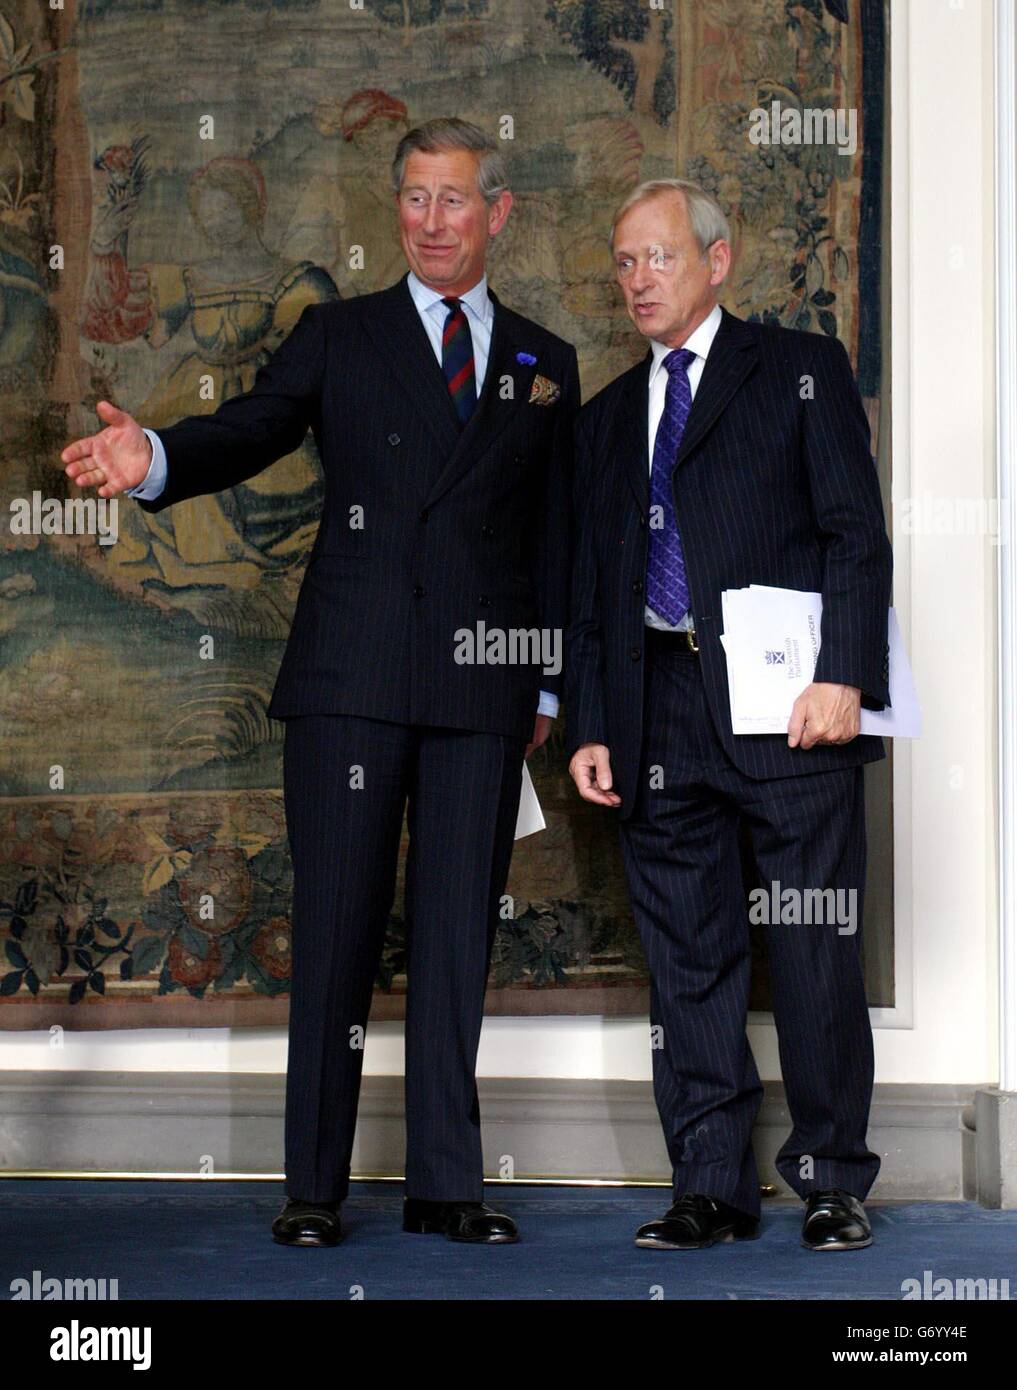 Der Prinz von Wales (links) im Bild mit George Reid MSP. Prinz Charles veranstaltet einen Empfang für Mitglieder des schottischen Parlaments im Holyrood Palace. Stockfoto